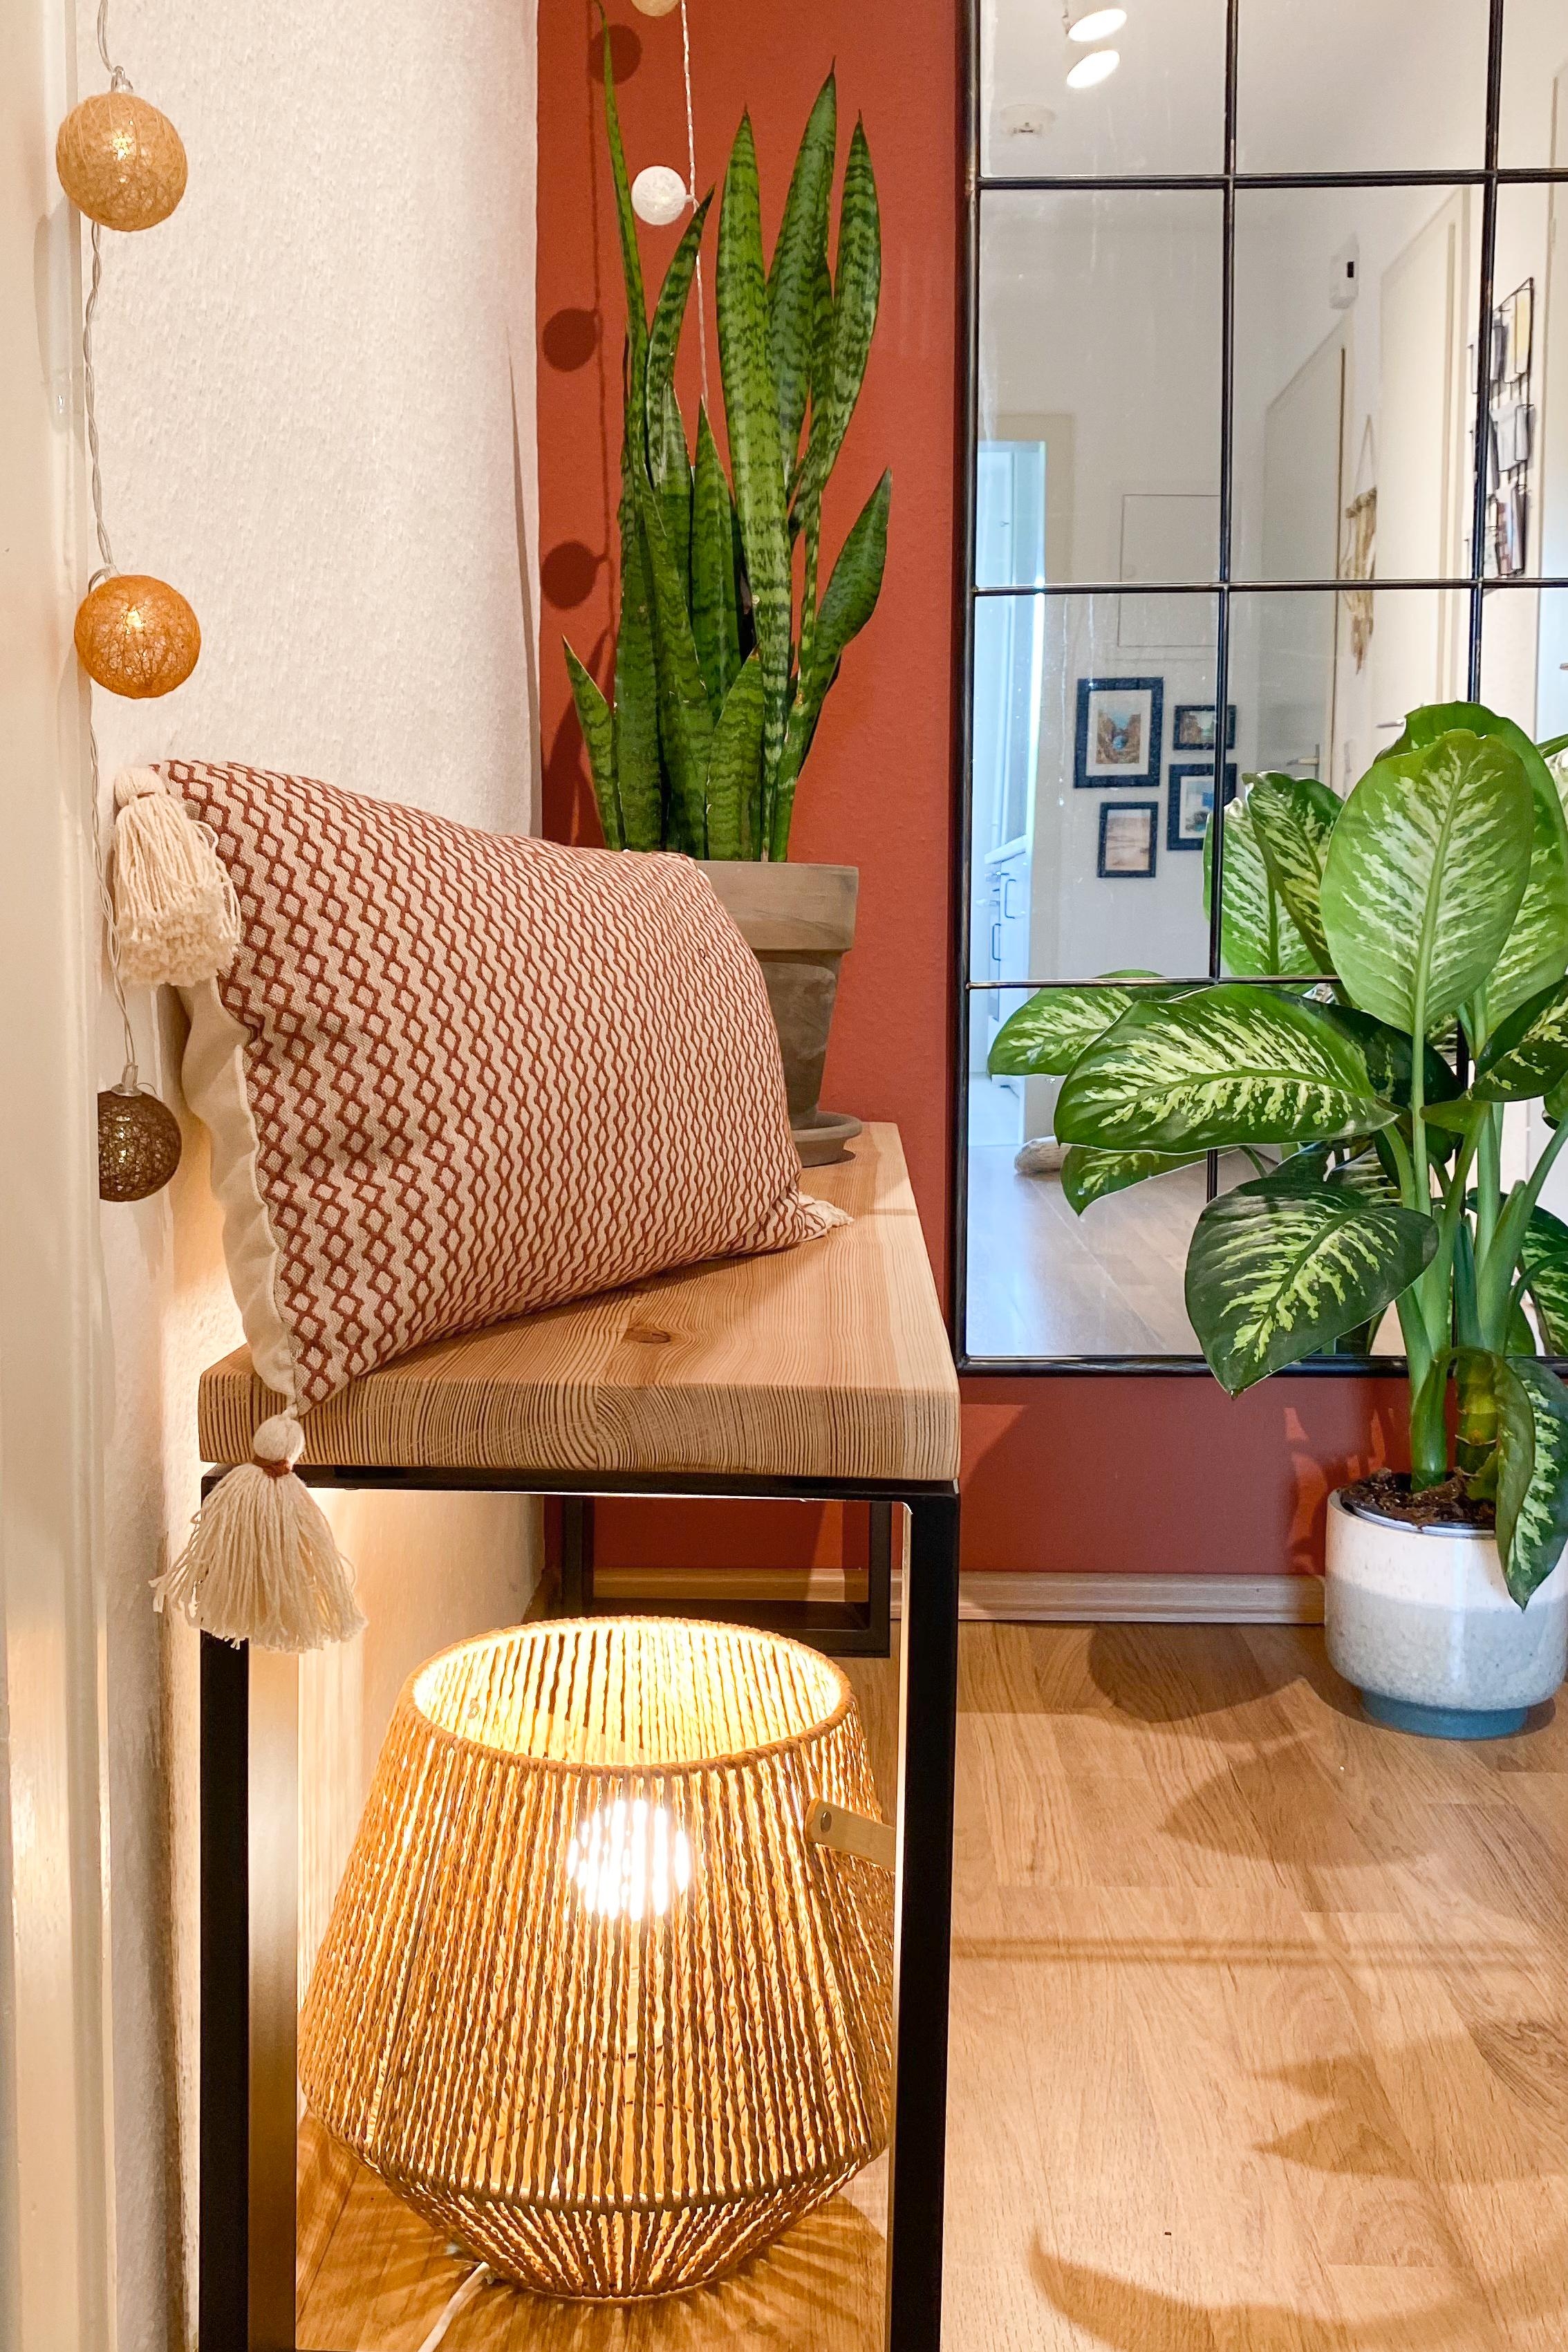 Eingangsbereich in warmen terrakotta und beige Tönen #boho #plant #hallway #lichterkette #cozy #homeinterior